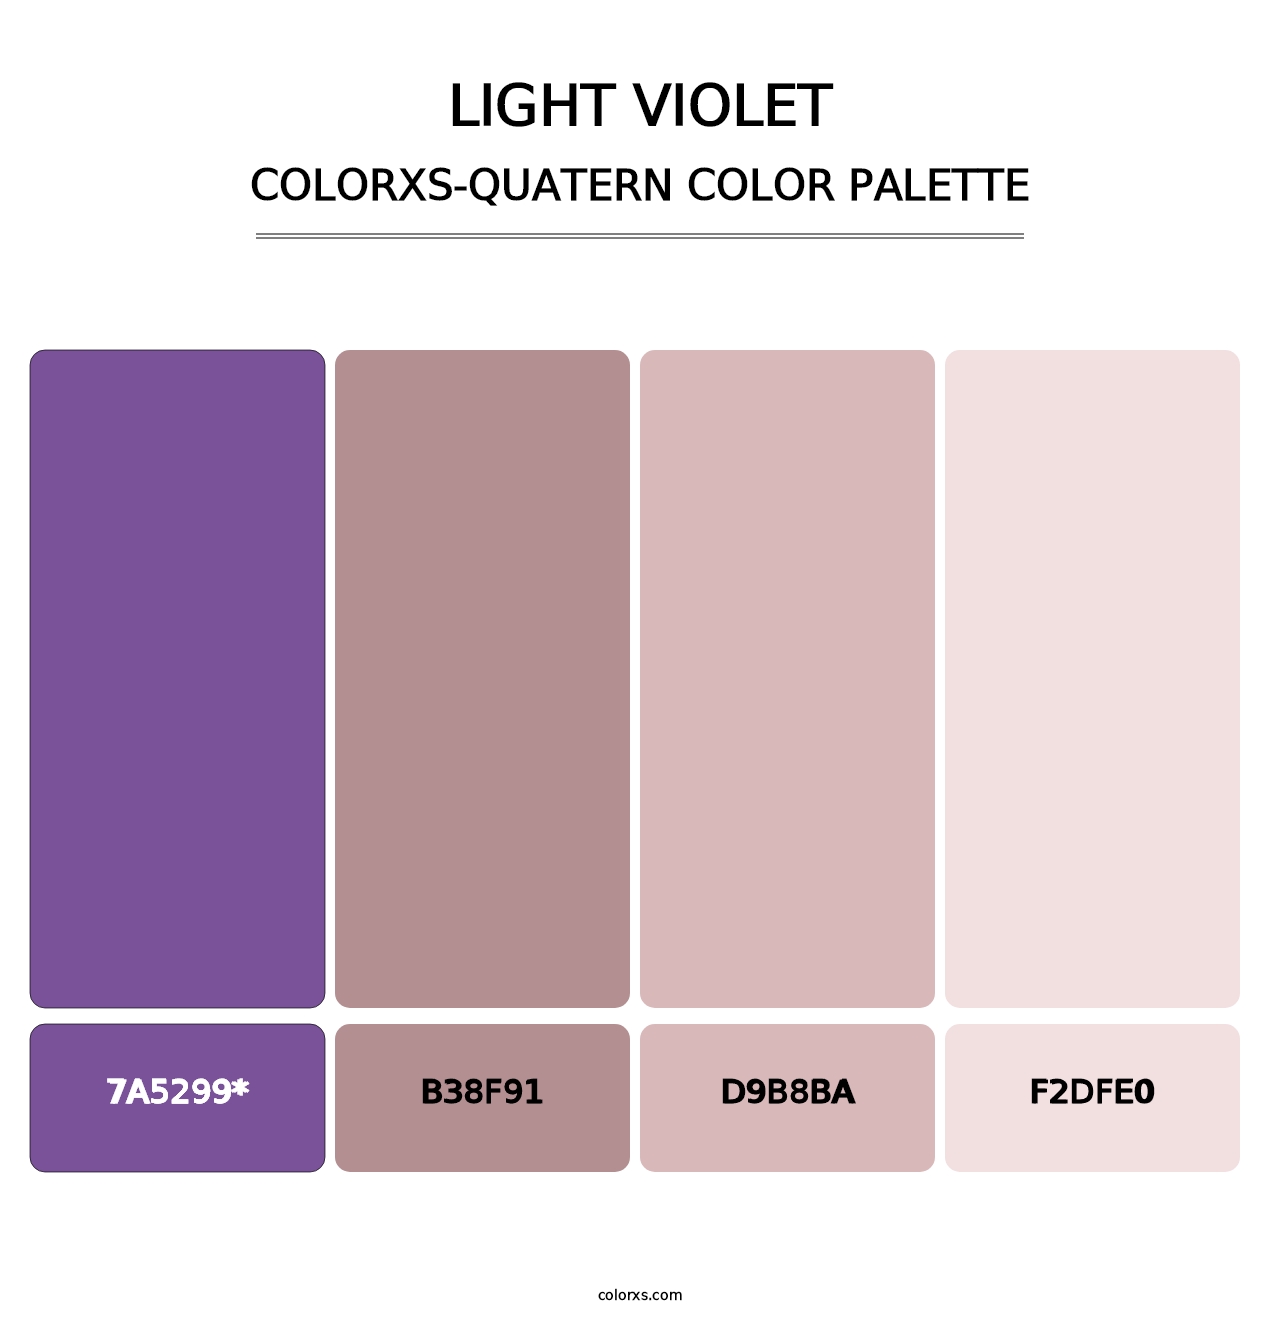 Light Violet - Colorxs Quatern Palette